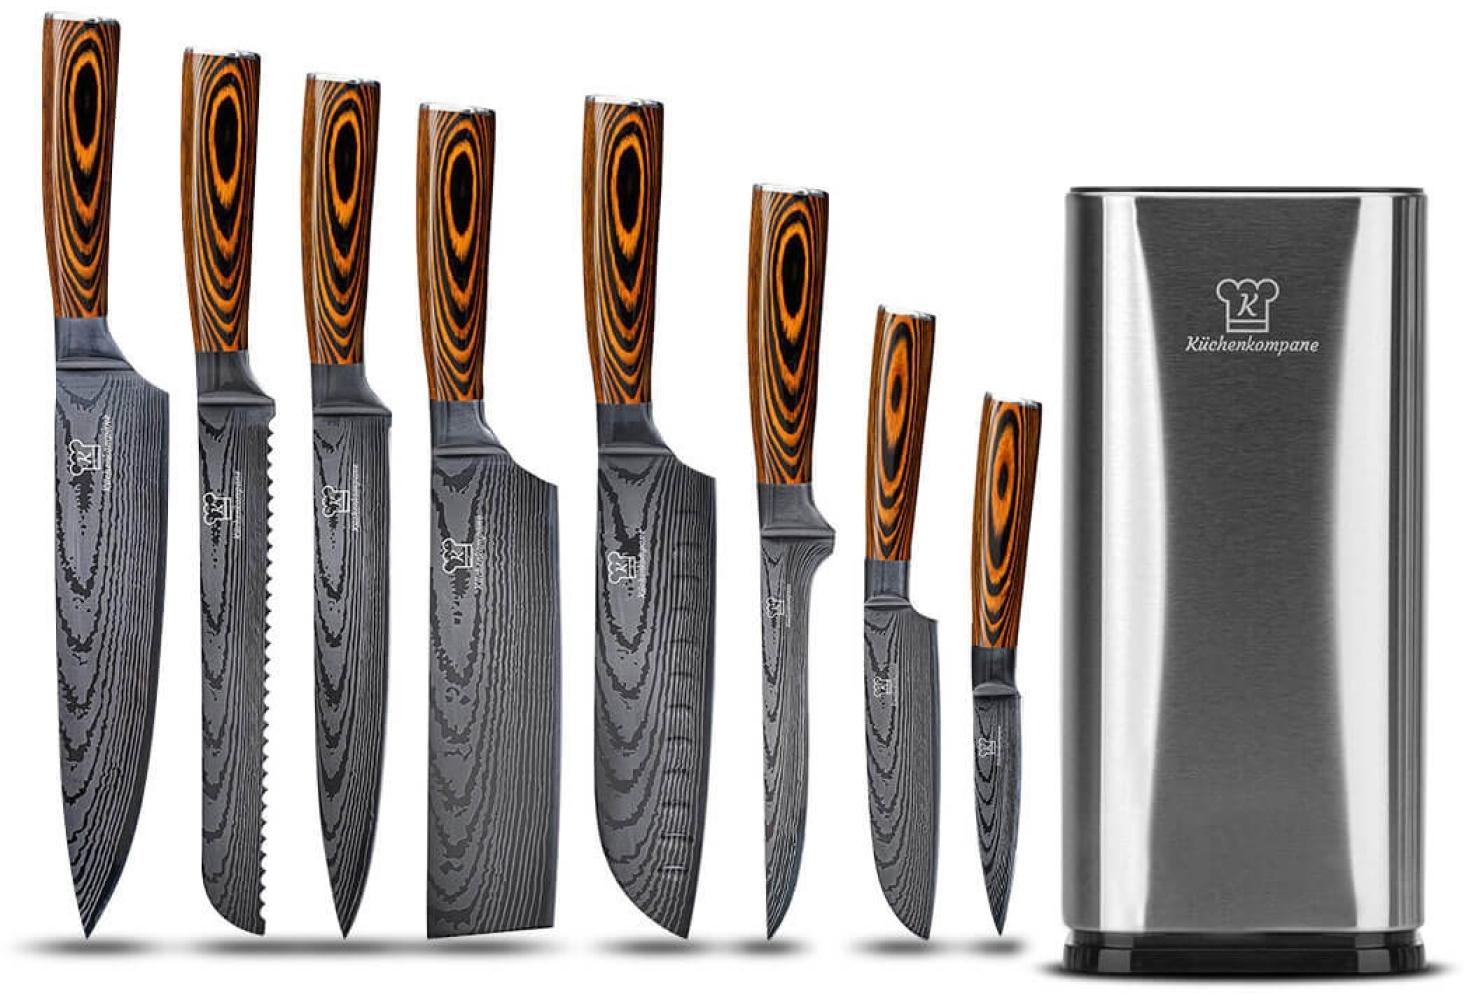 Professionelles Edelstahl Messerset Akarui mit Edelstahl Messerblock - 8-teiliges Küchenmesser Set - rostfrei & scharf - Designed in Germany Bild 1